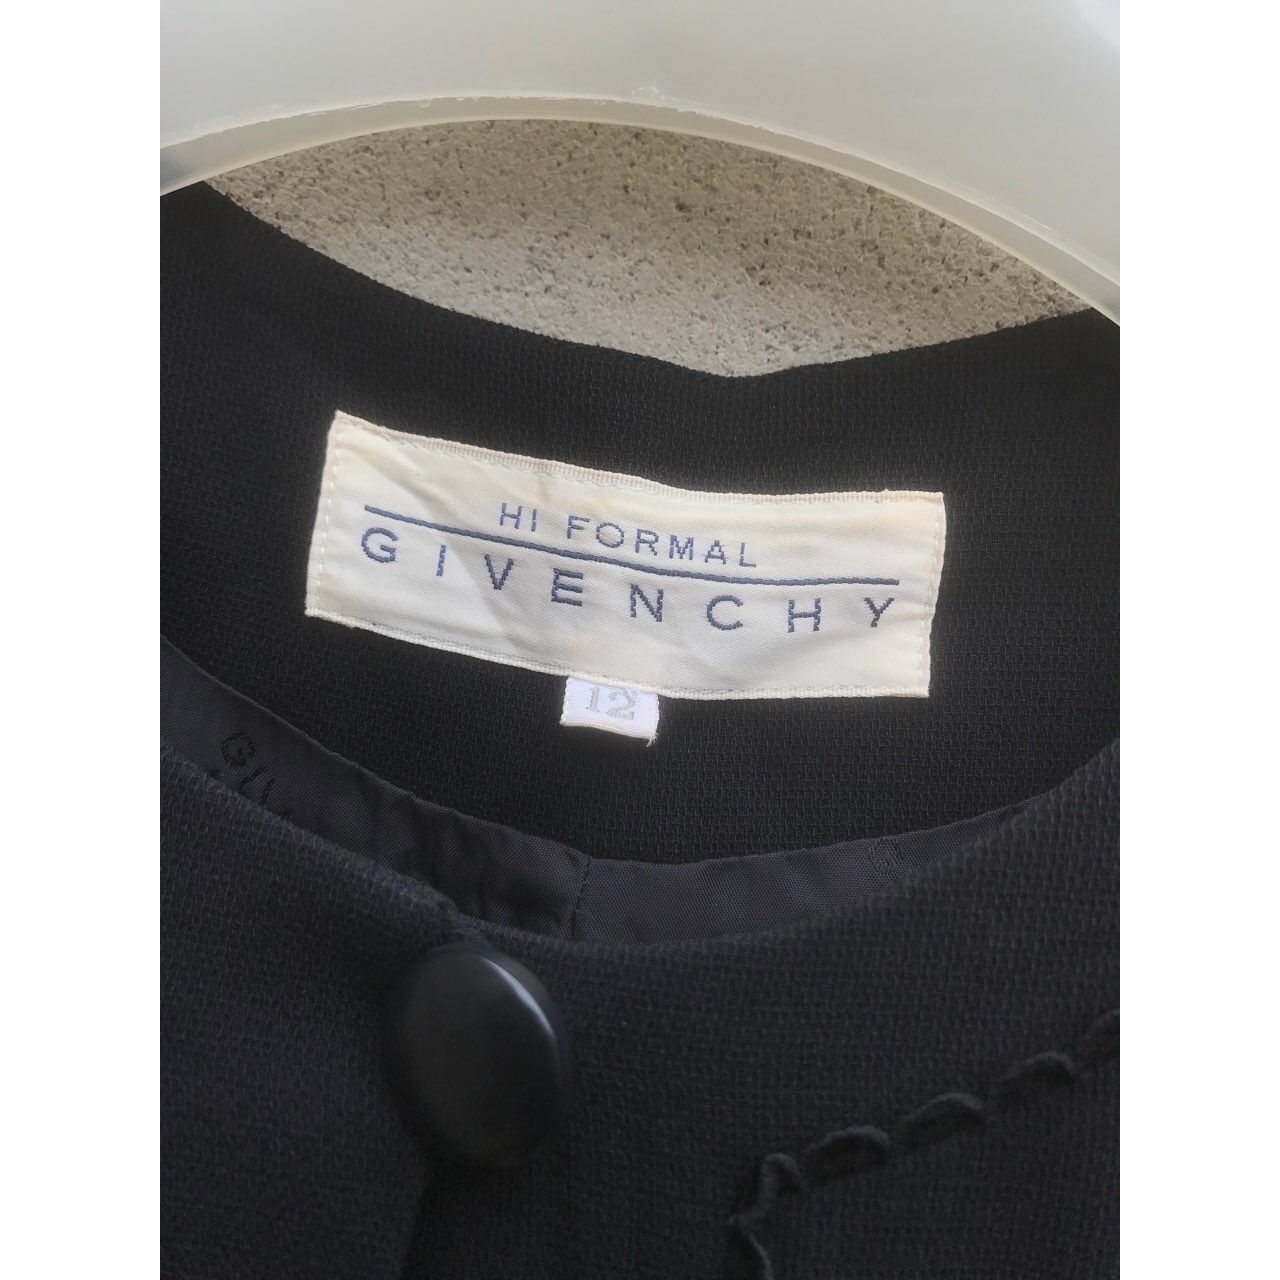 Givenchy Black Midi Dress